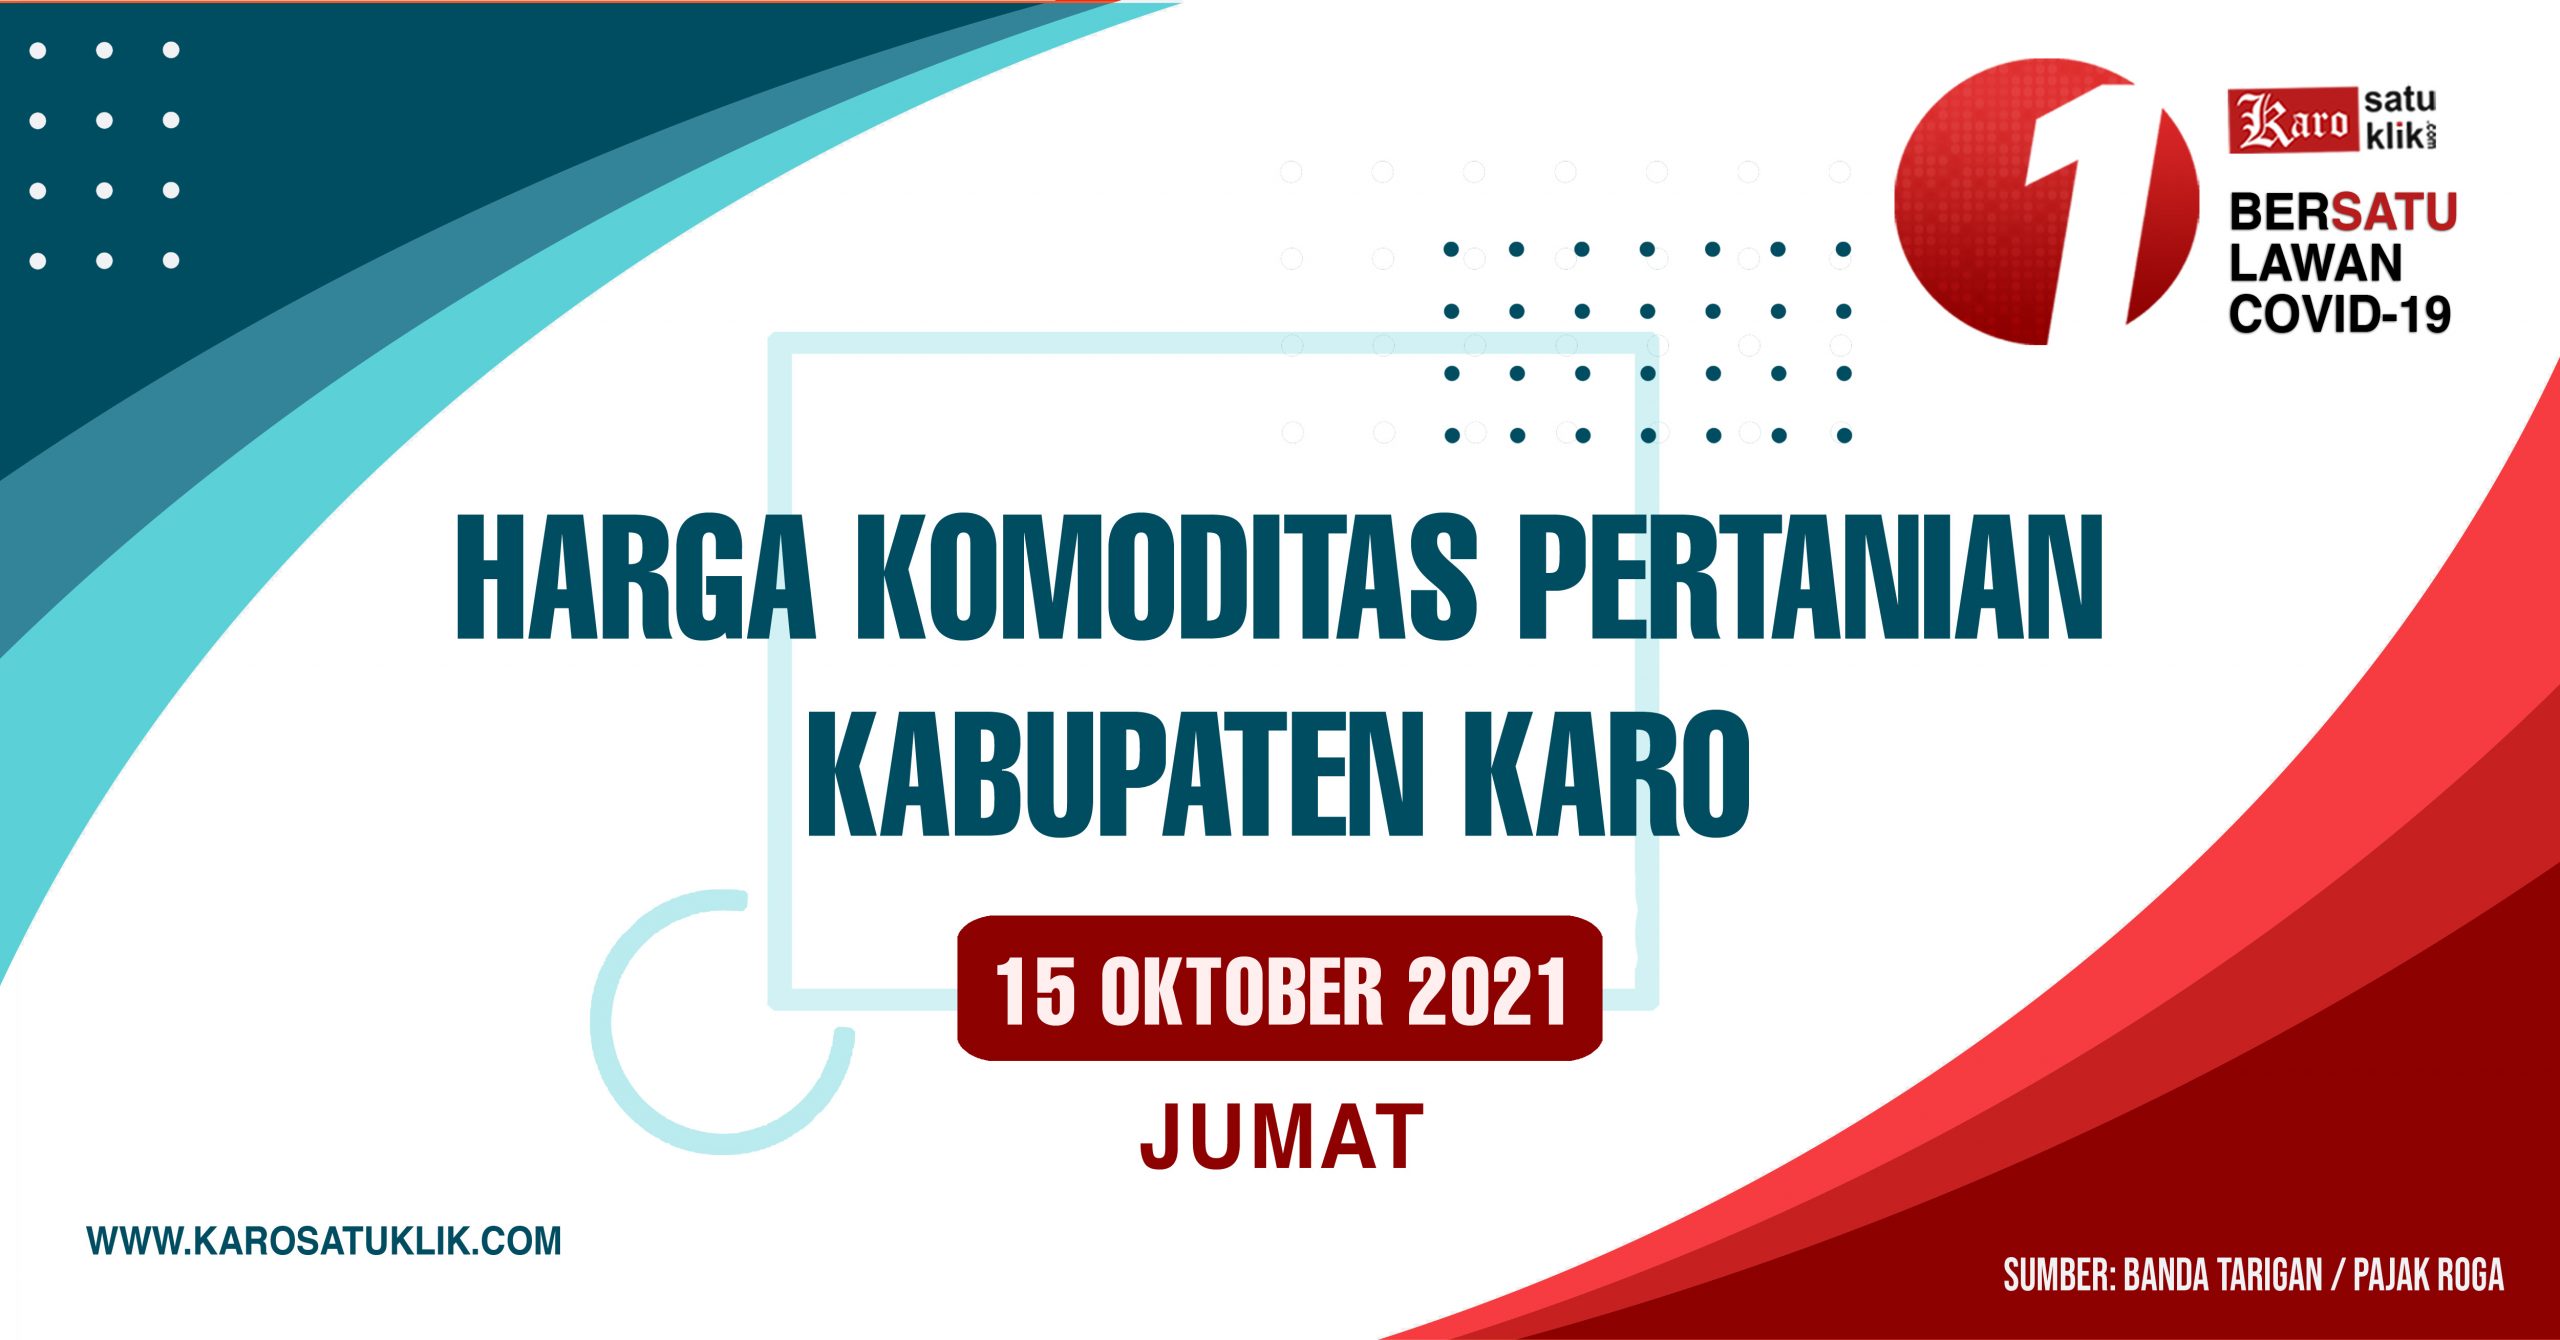 Daftar Harga Komoditas Pertanian Kabupaten Karo, 15 Oktober 2021